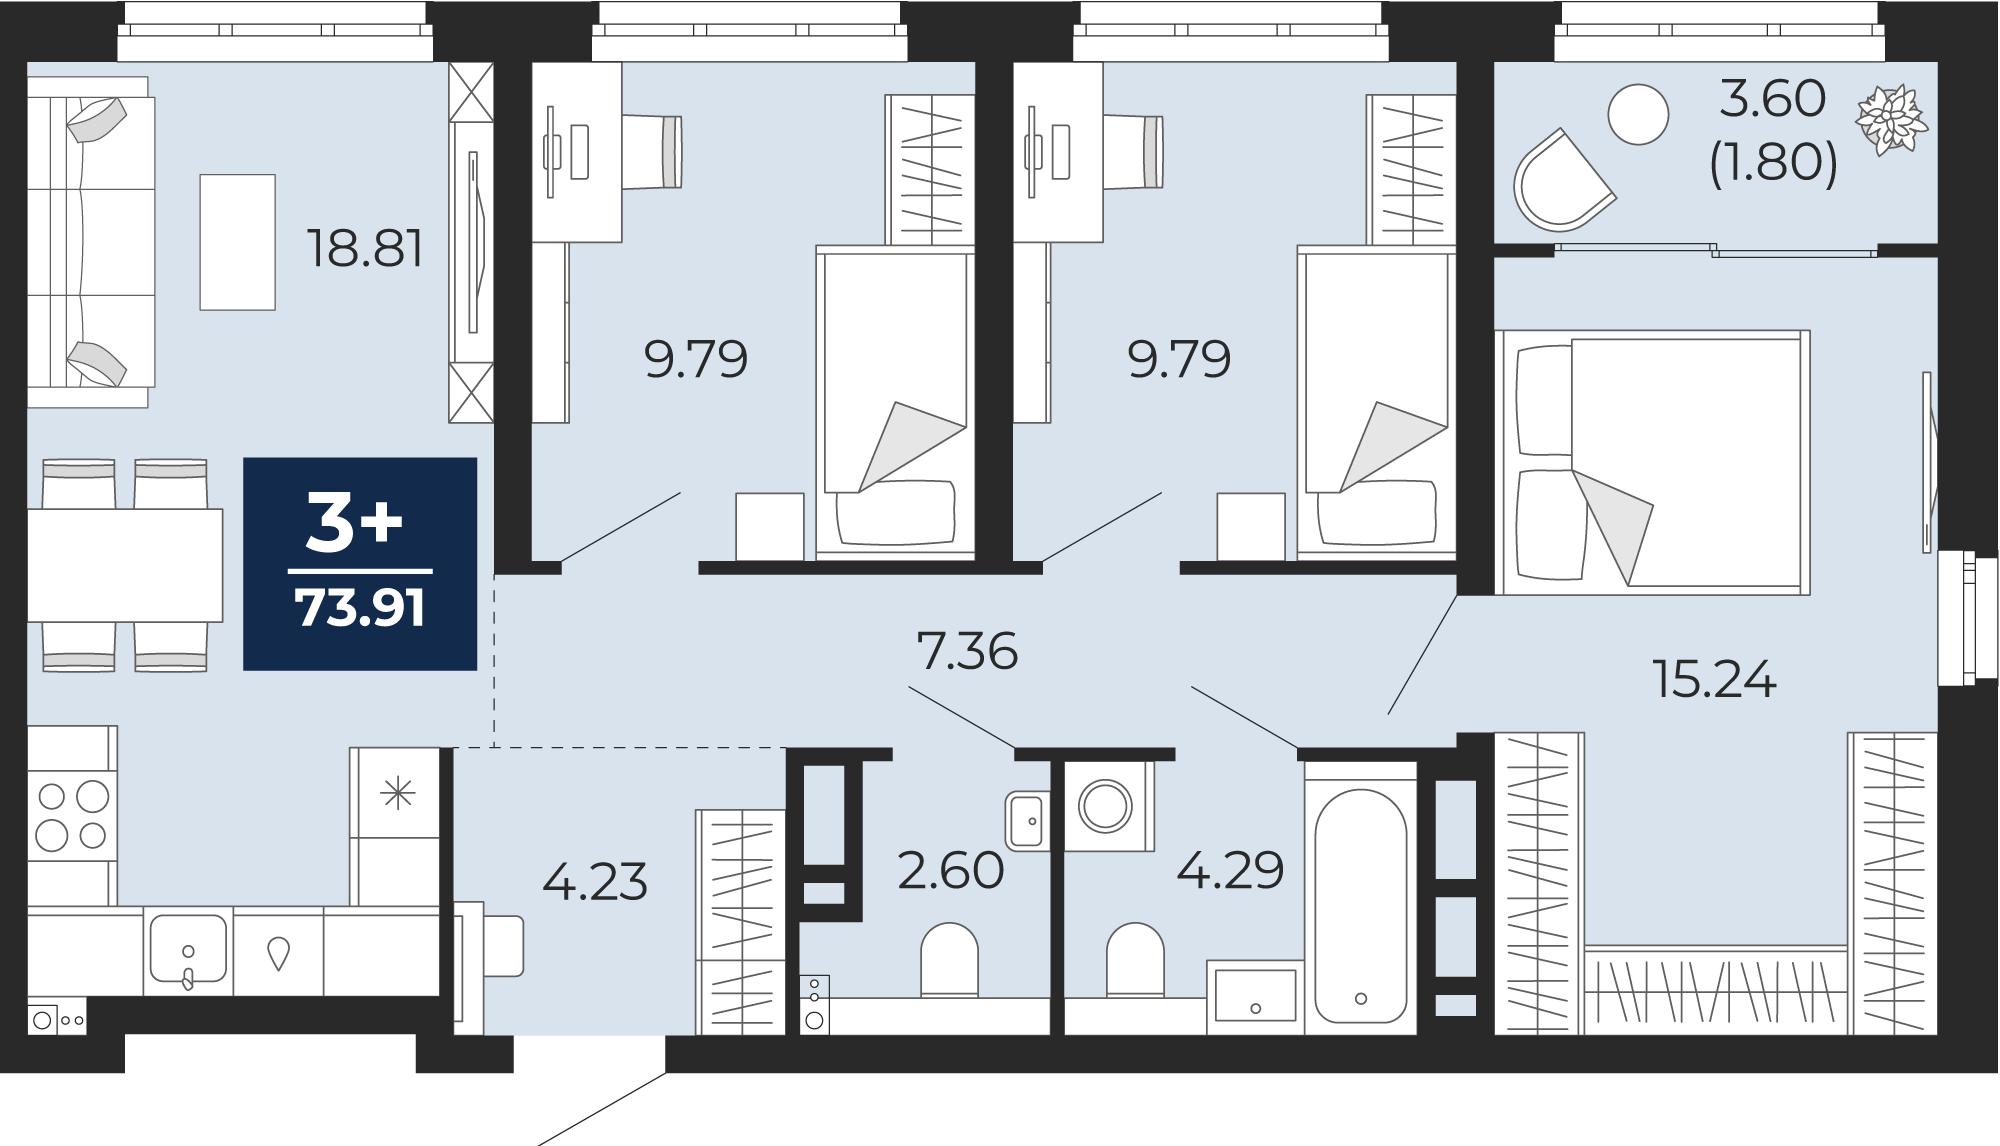 Квартира № 11, 3-комнатная, 73.91 кв. м, 4 этаж